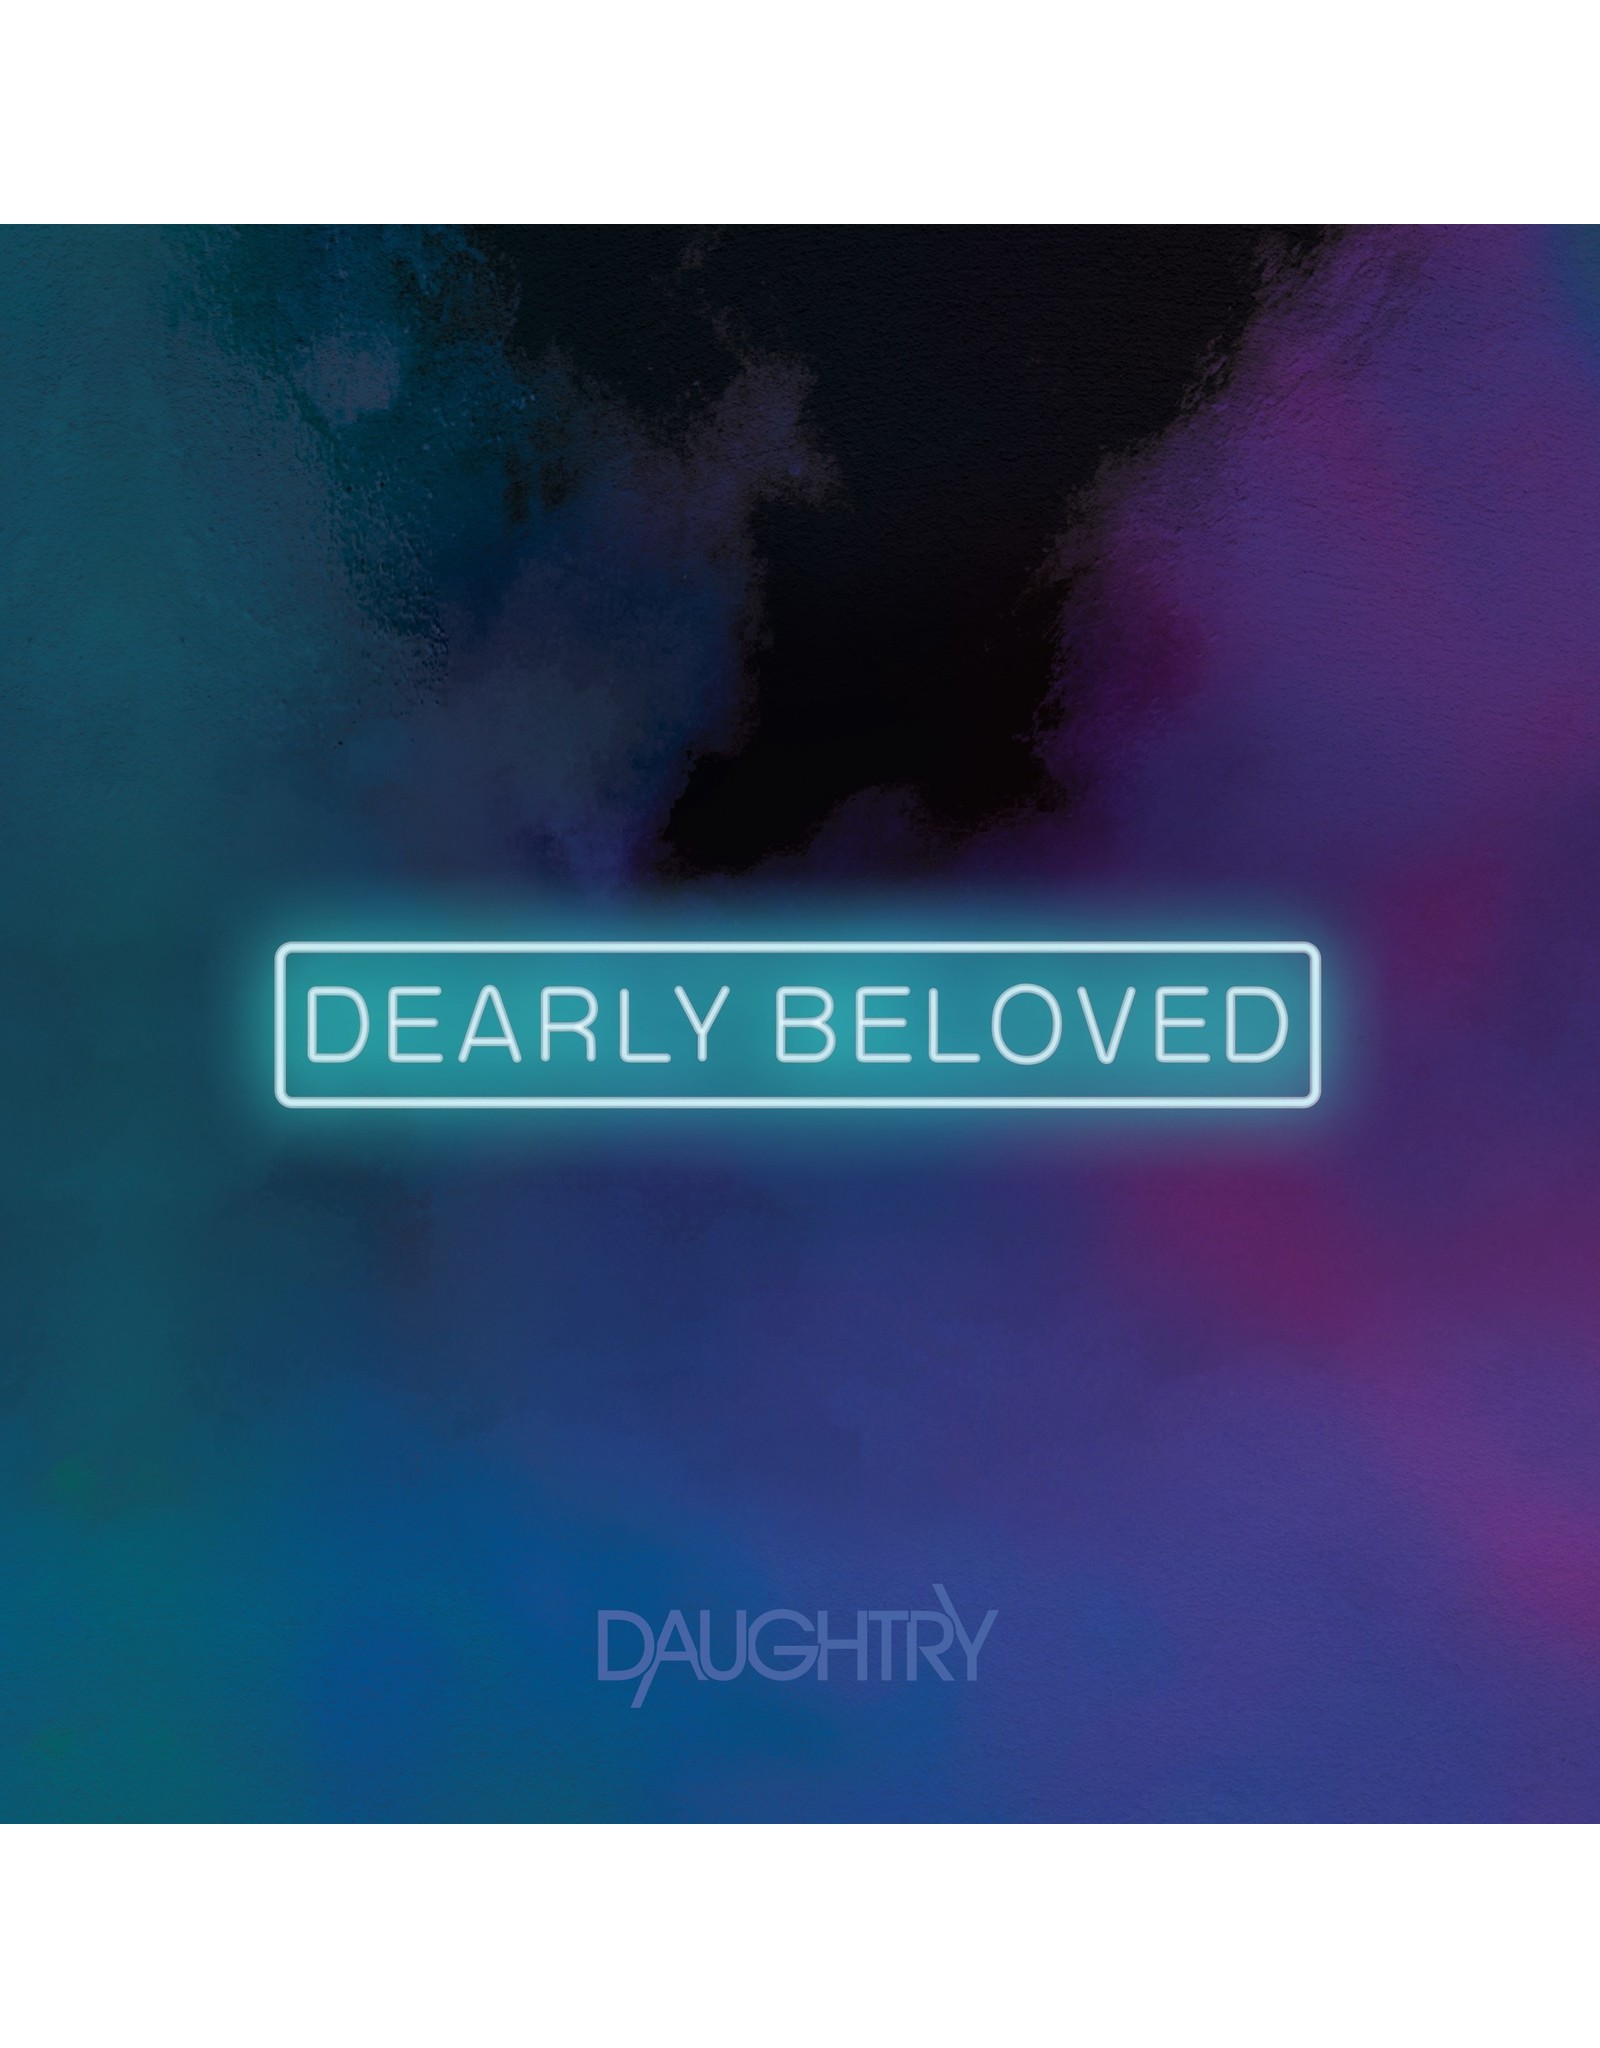 Daughtry - Dearly Beloved 2LP (teal-purple/hand-pressed/2 bonus tracks/RSD 22' 2 Exclusive)